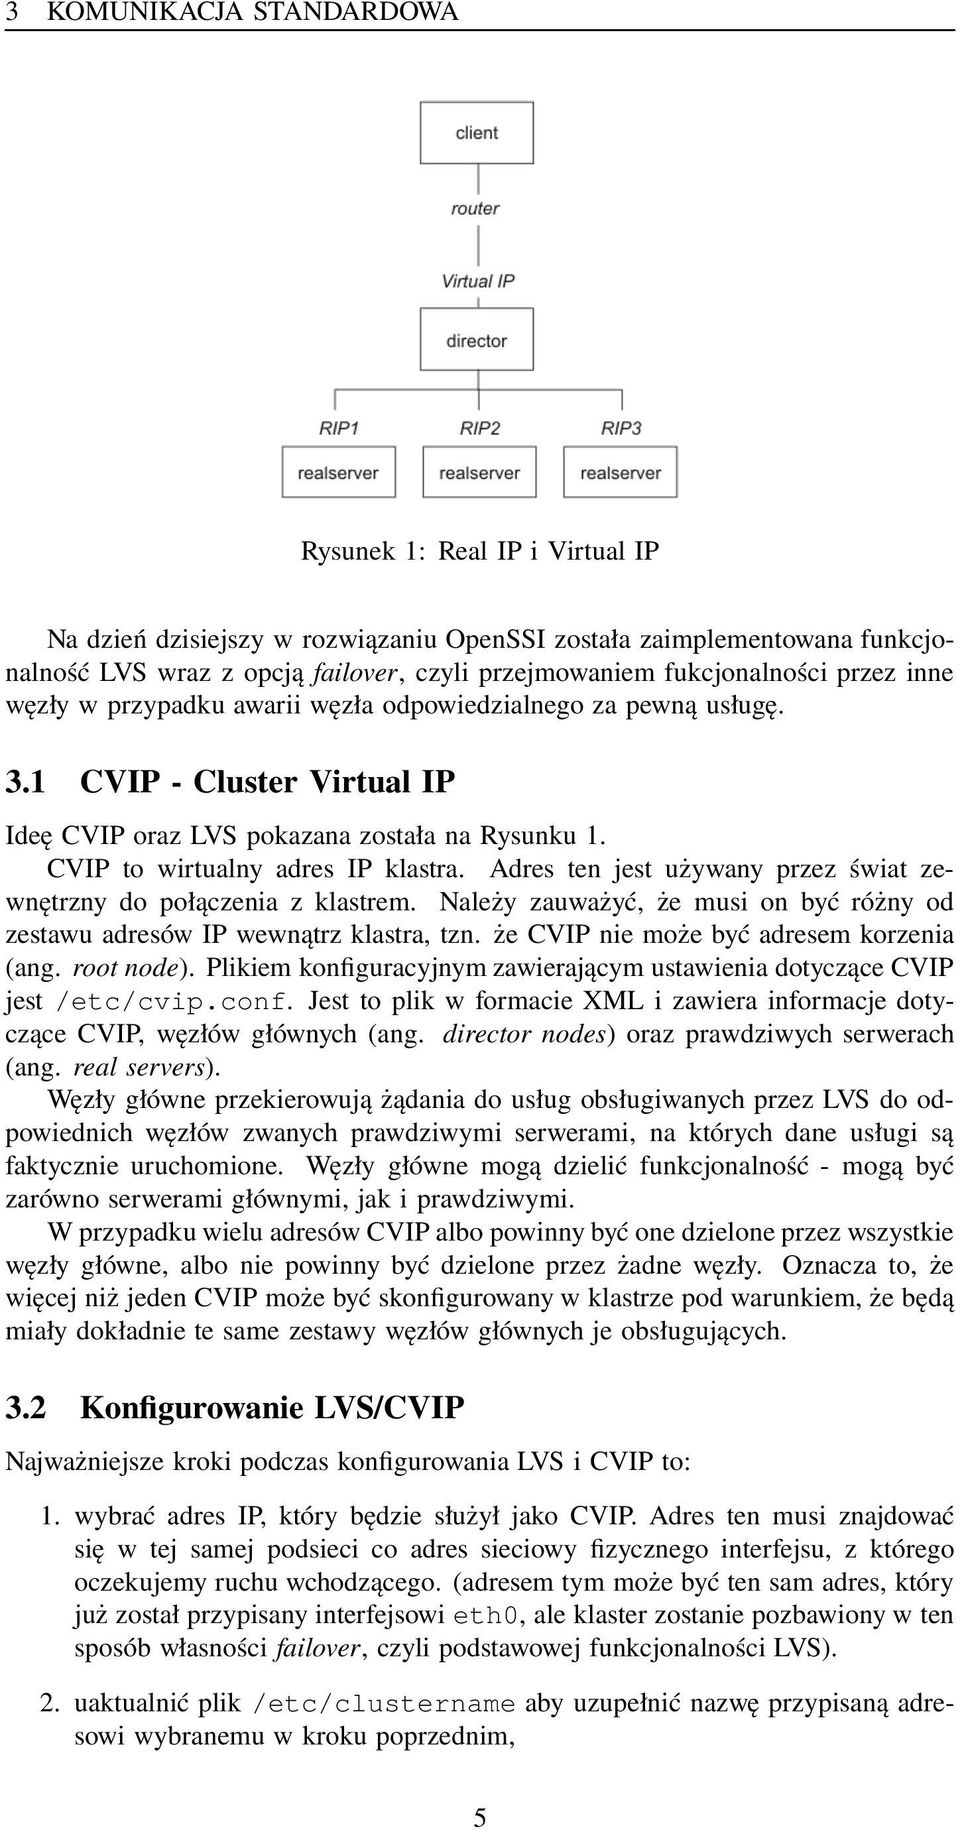 CVIP to wirtualny adres IP klastra. Adres ten jest używany przez świat zewnętrzny do połączenia z klastrem. Należy zauważyć, że musi on być różny od zestawu adresów IP wewnątrz klastra, tzn.